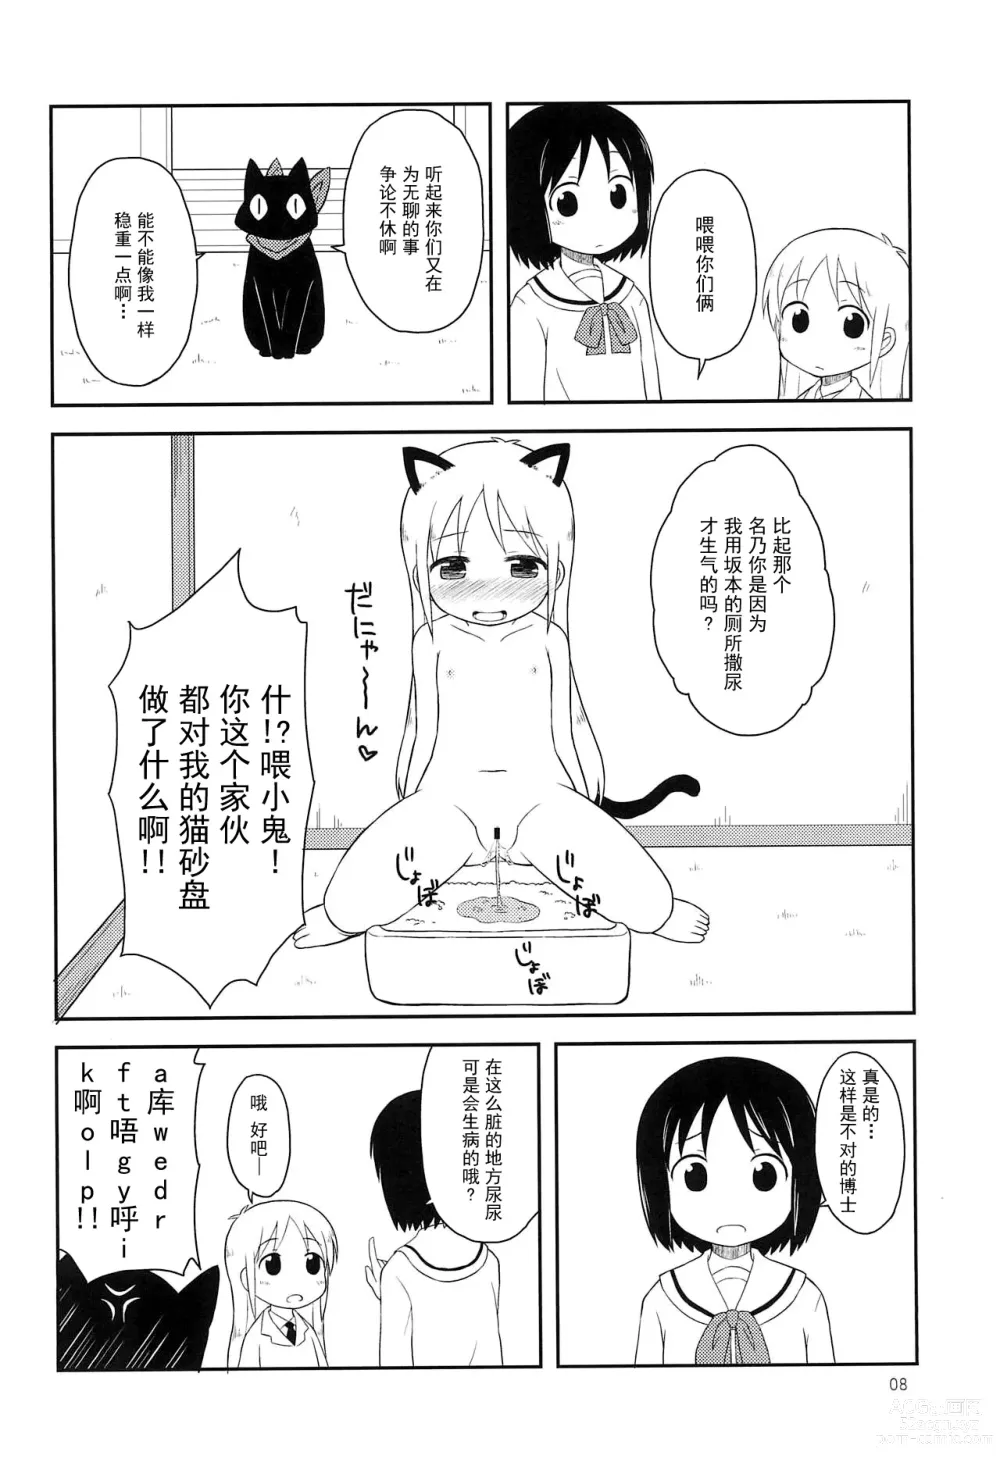 Page 8 of doujinshi Youta Tanpenshuu Yoru no Uta